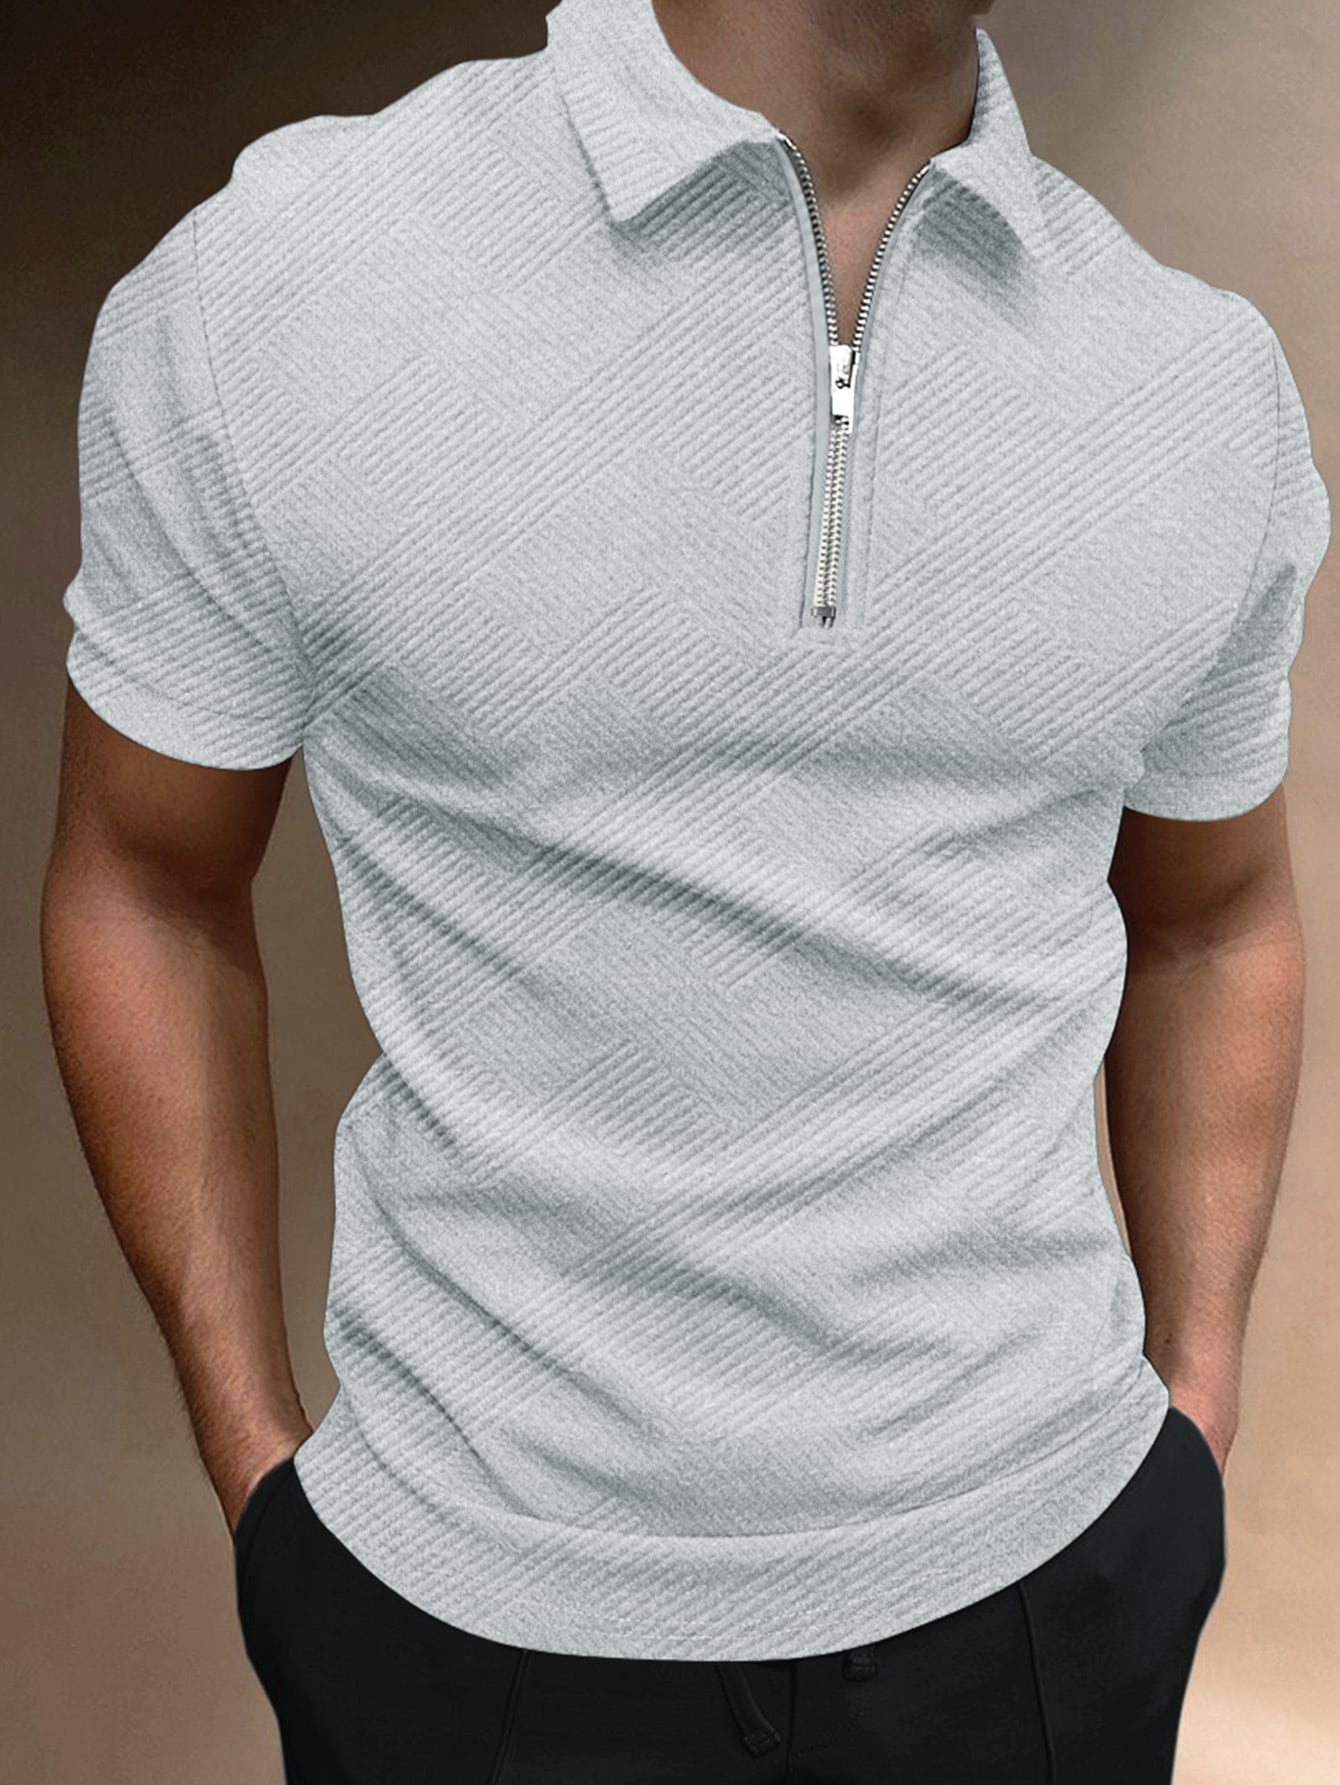 Мужская рубашка-поло с коротким рукавом Manfinity Homme с однотонной текстурой, серый